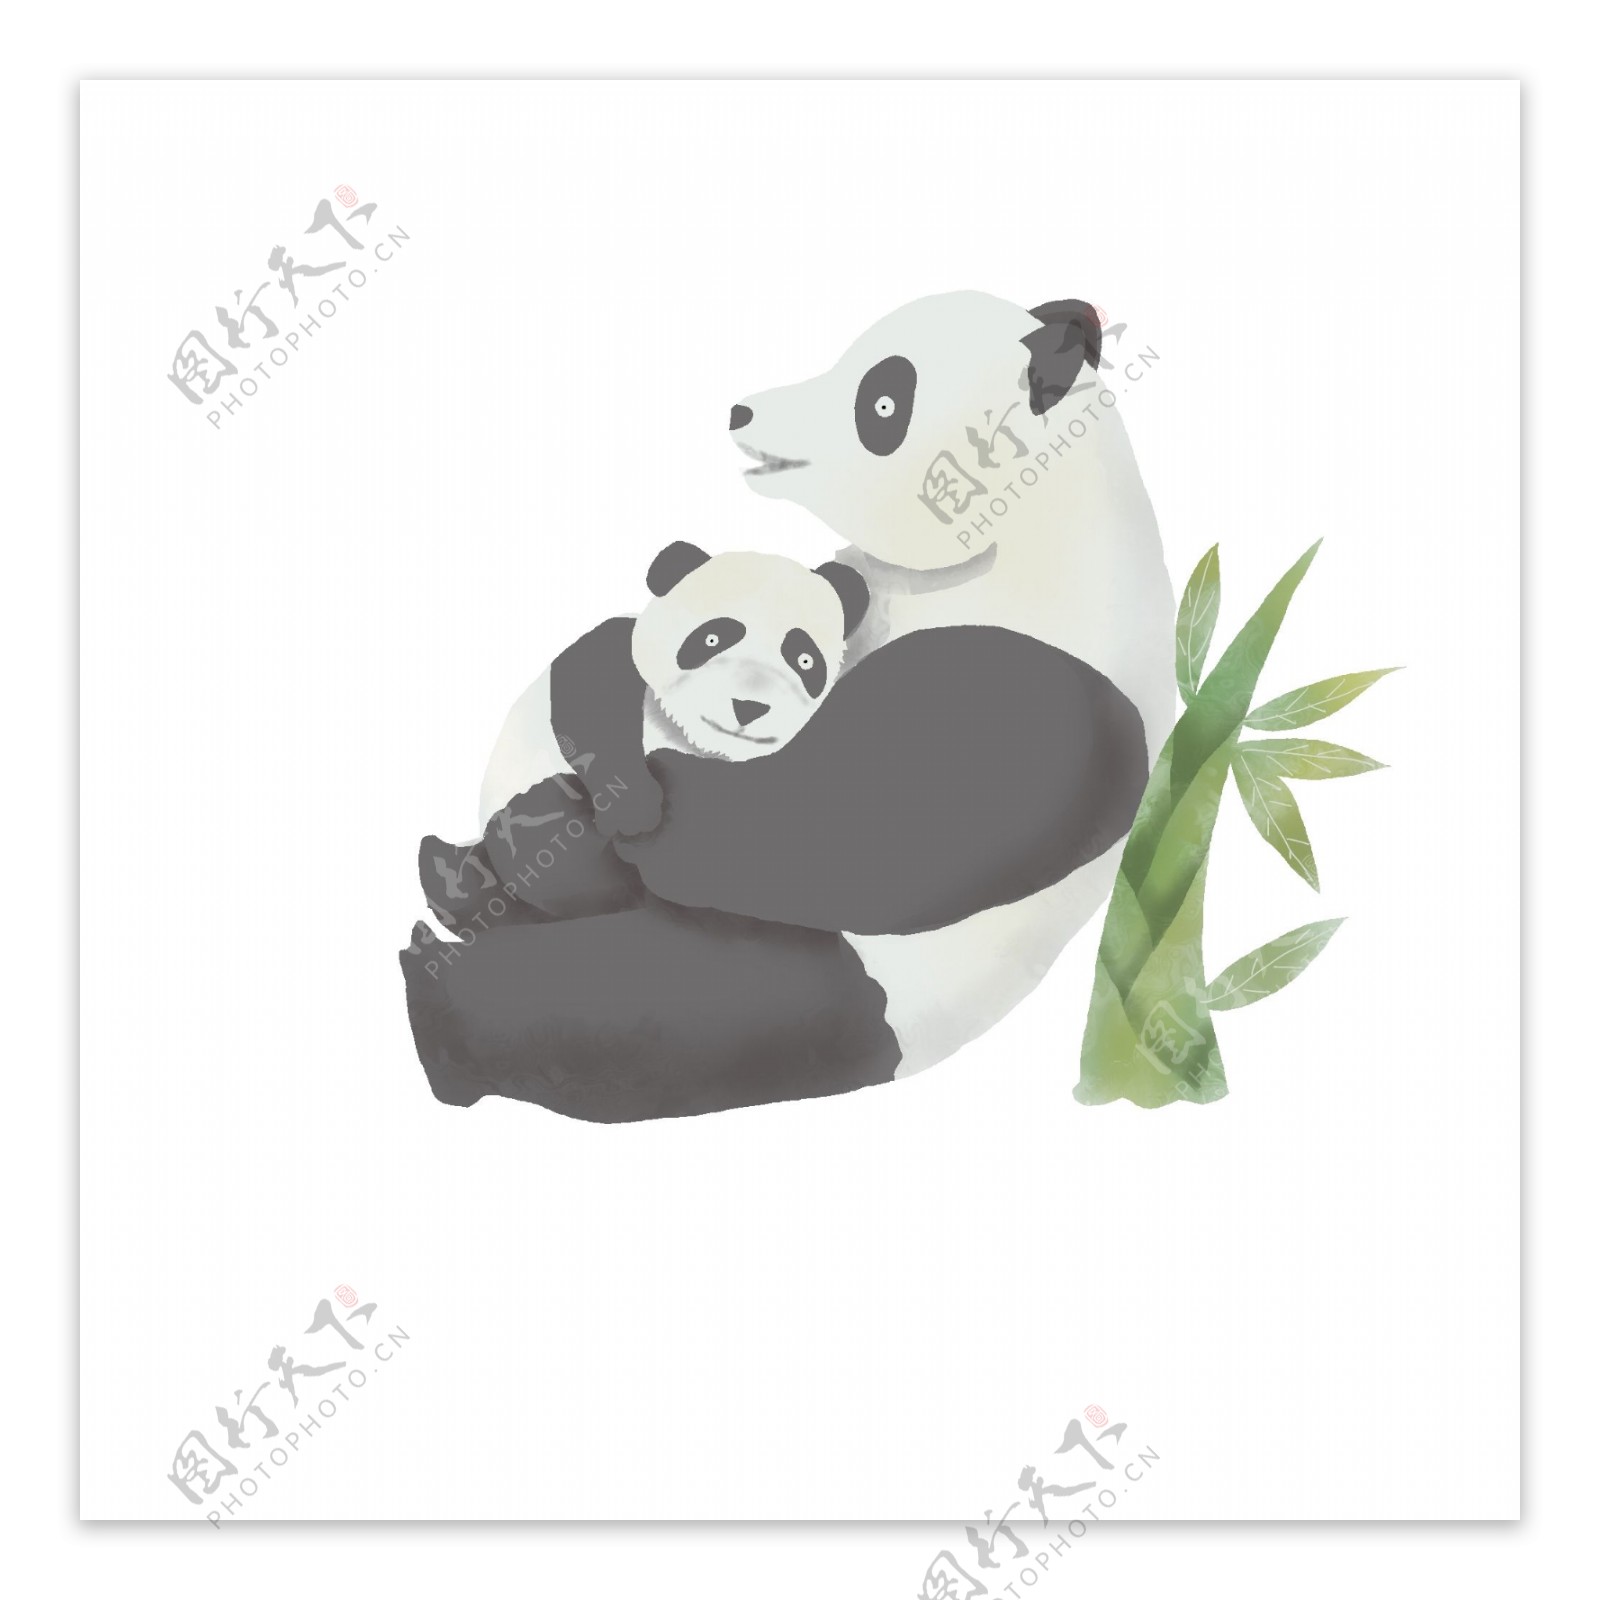 熊猫母亲抱着小熊猫依靠竹子元素